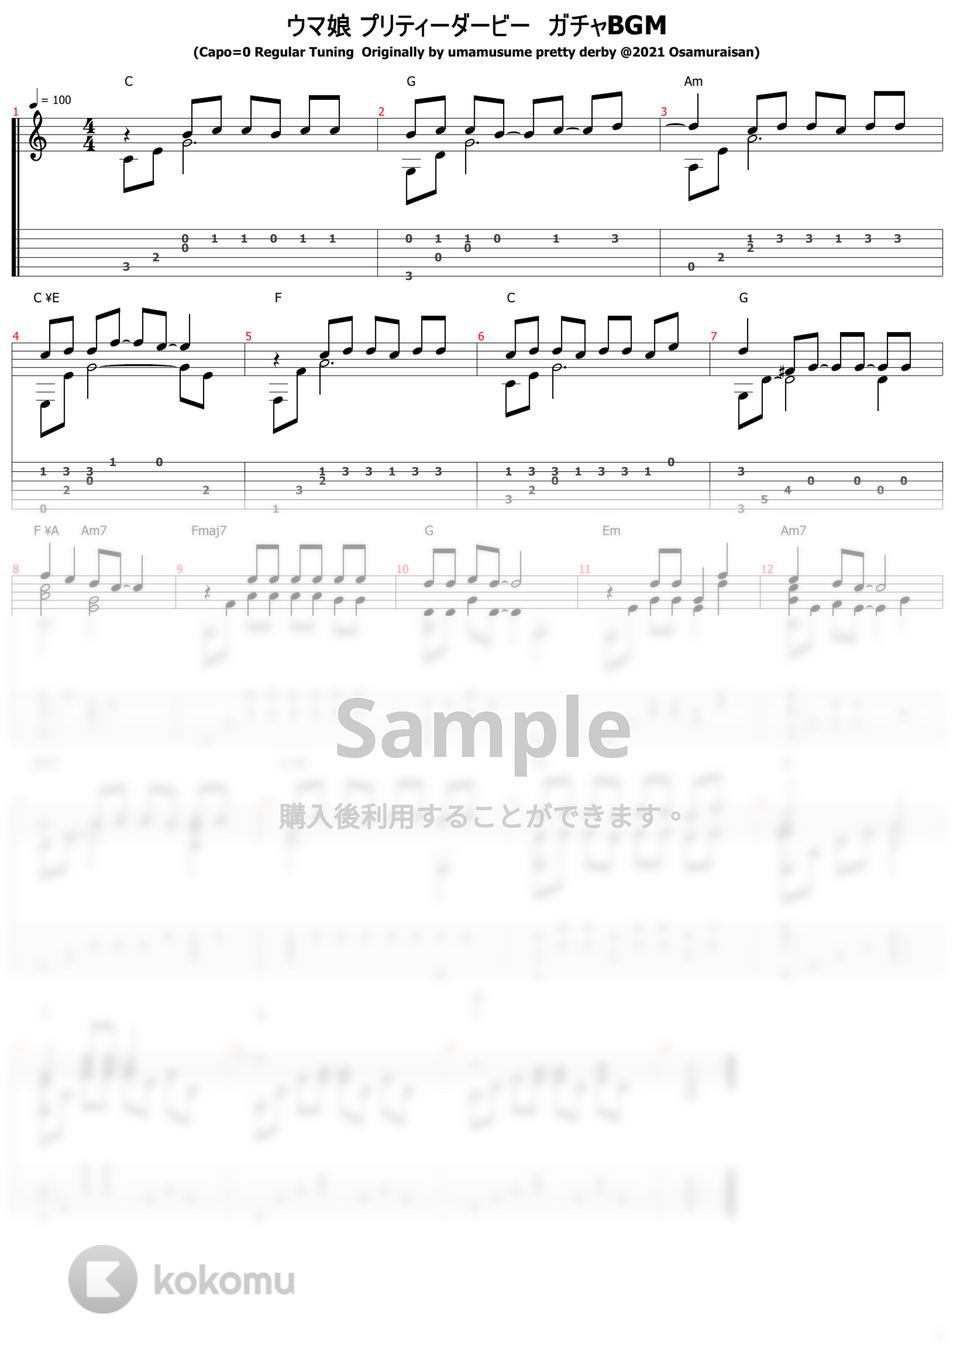 ウマ娘 プリティーダービー - うまぴょい伝説～ガチャBGM (ソロギター) by おさむらいさん